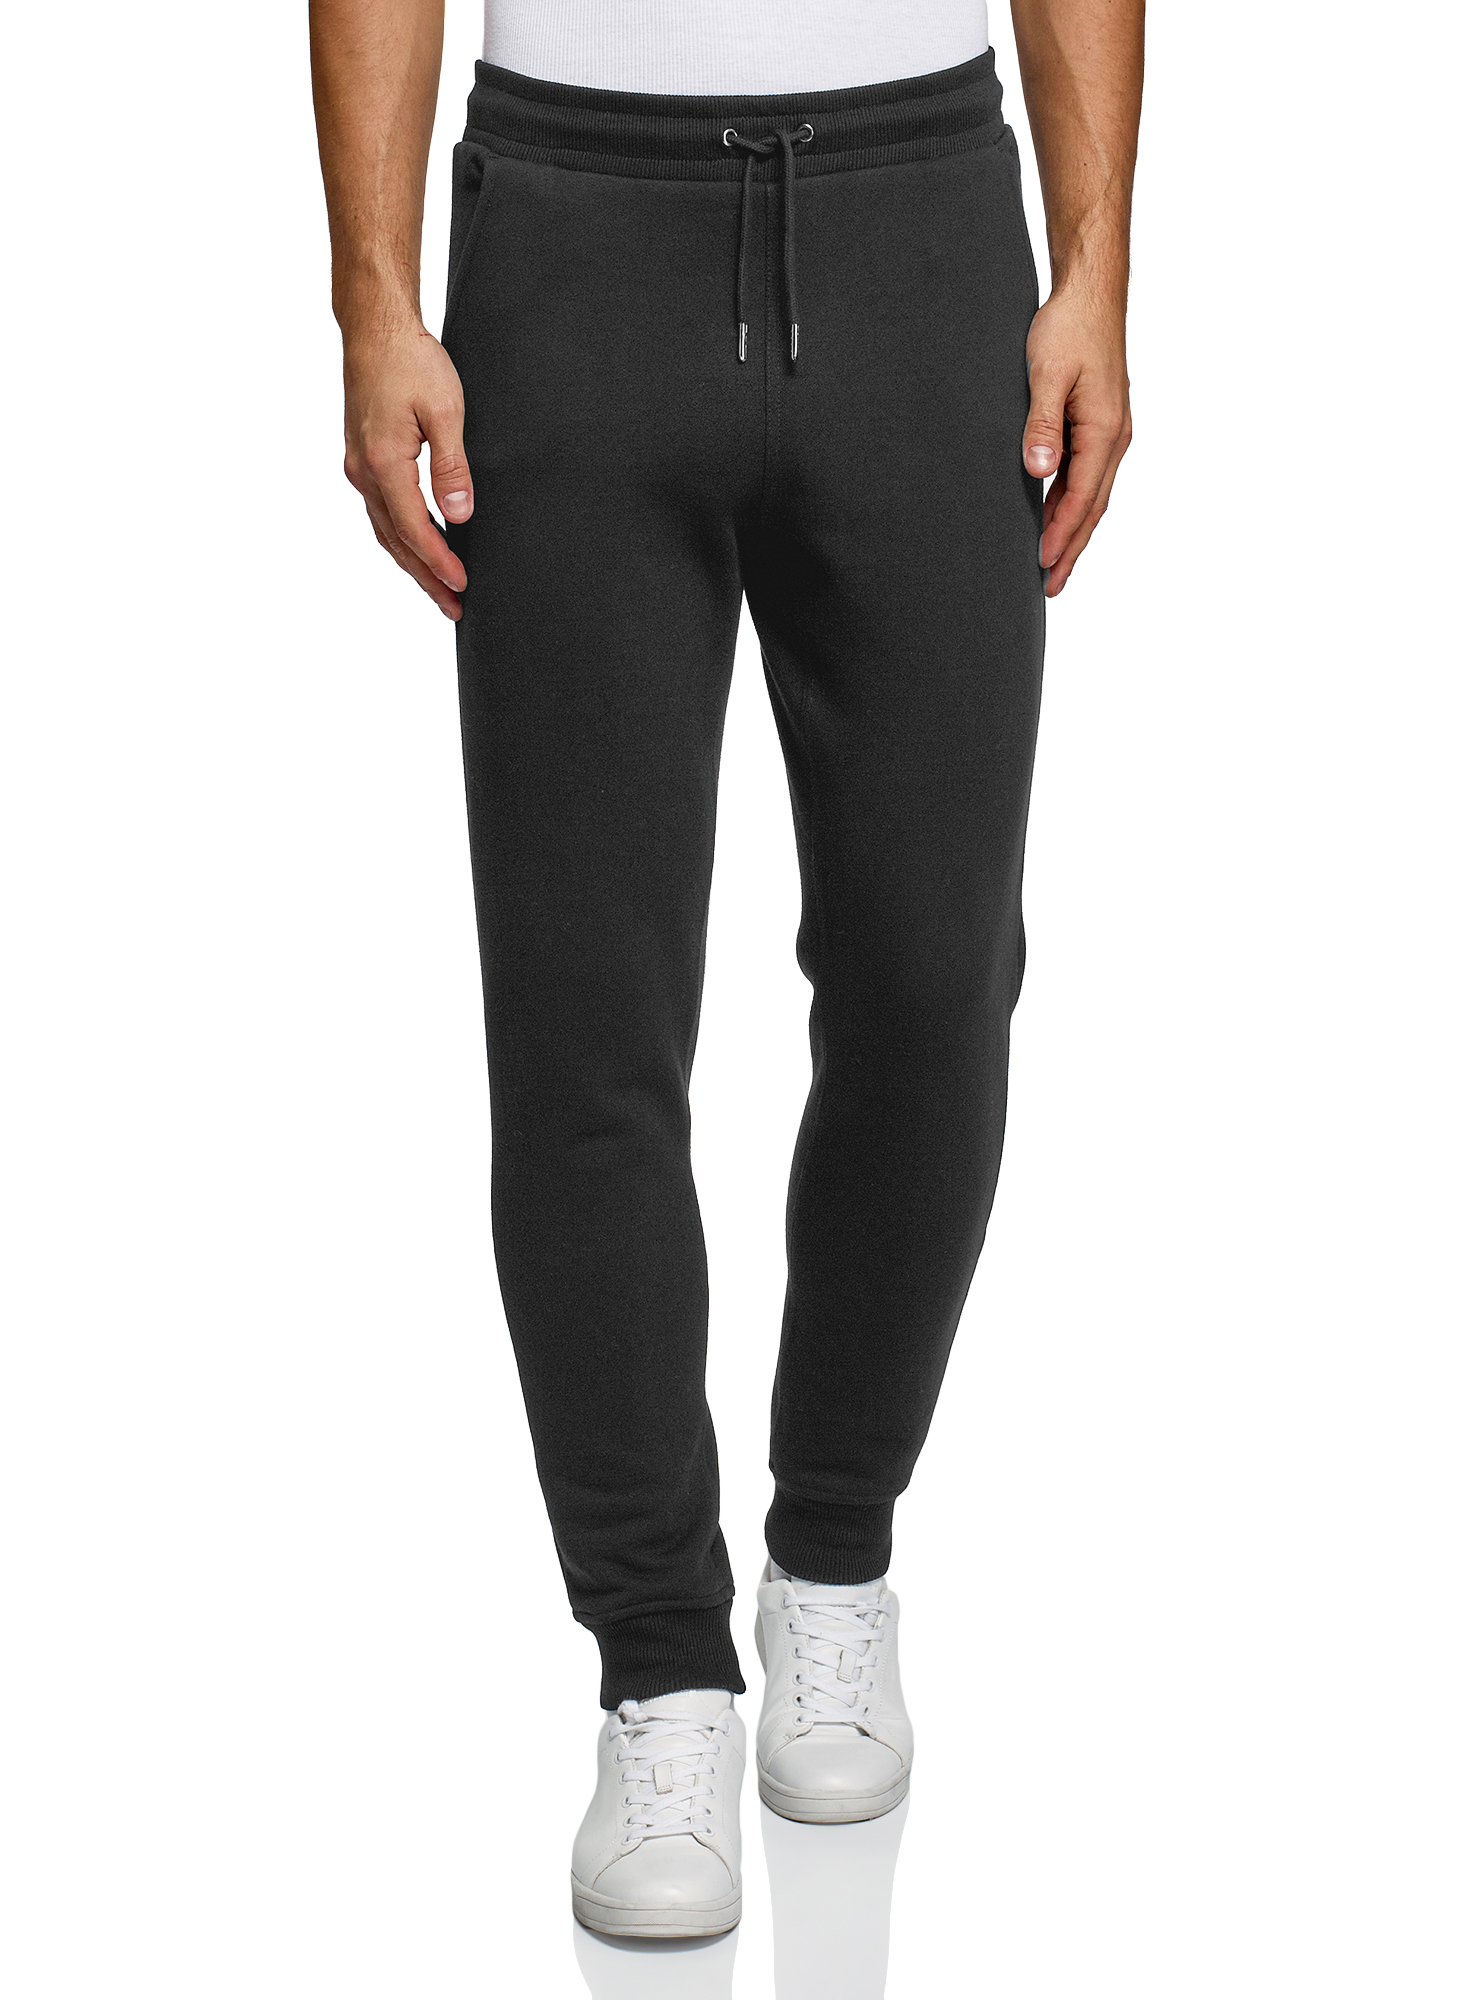 Спортивные брюки мужские oodji 5B200004M-3 черные XL